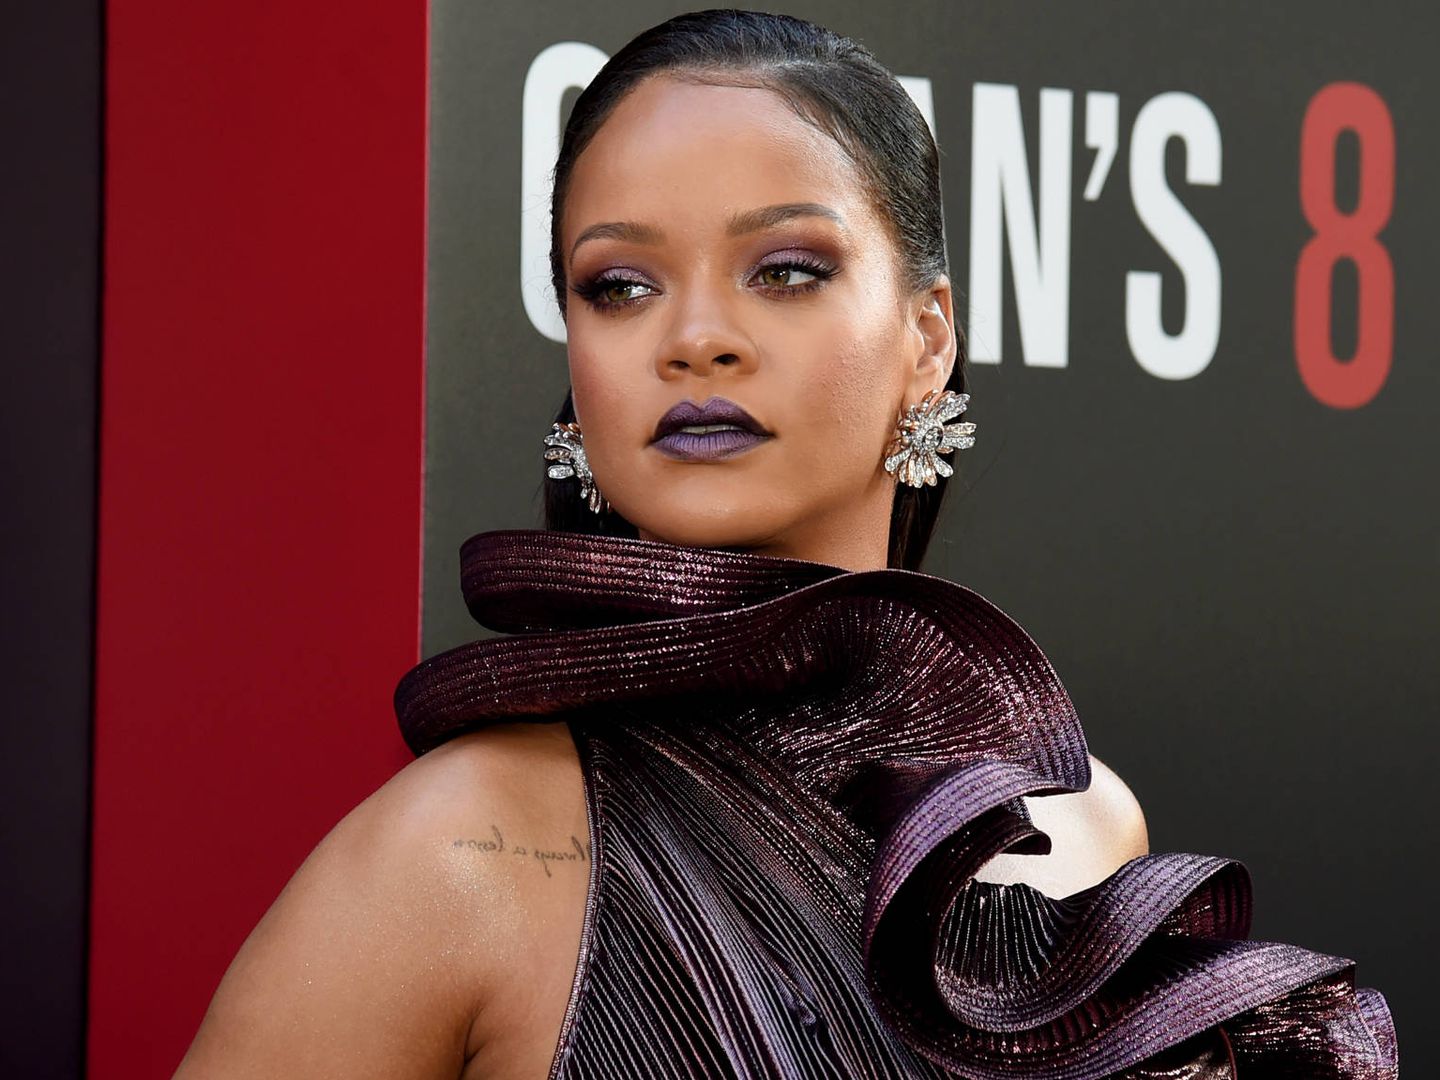 Tras el maquillaje, Rihanna ha lanzado la línea de moda Fenty. (Getty)